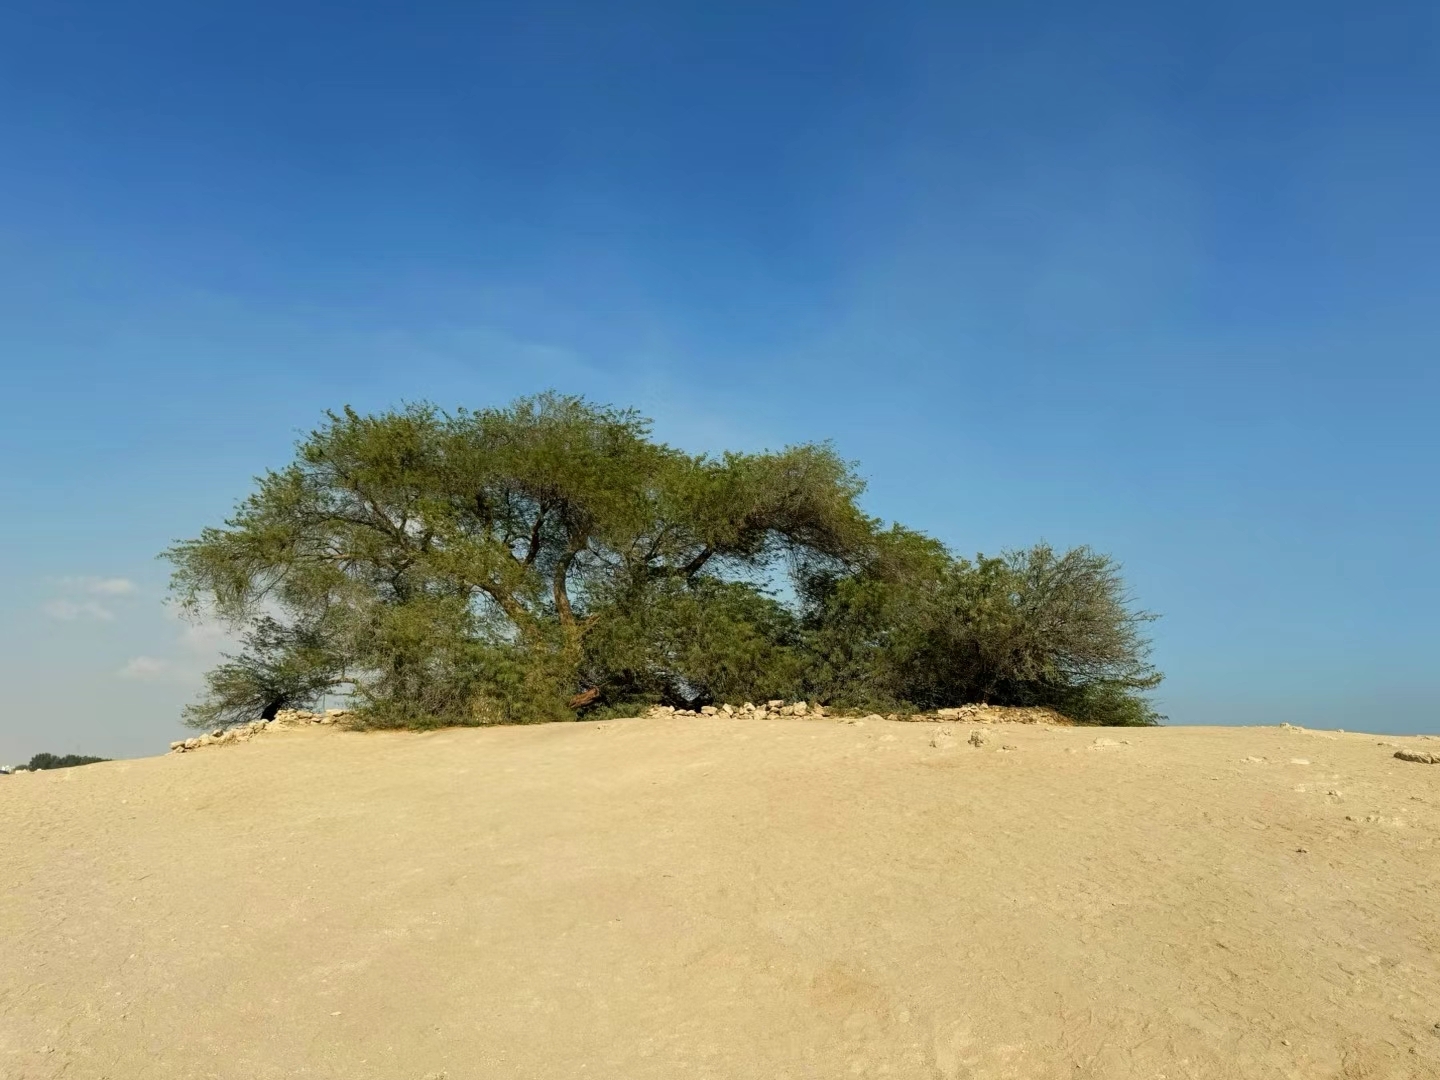 巴林的一棵树，这棵被称为生命之树。生命之树是巴林的一个具有神圣意义的地点。这棵树是一颗牧豆树，在荒漠